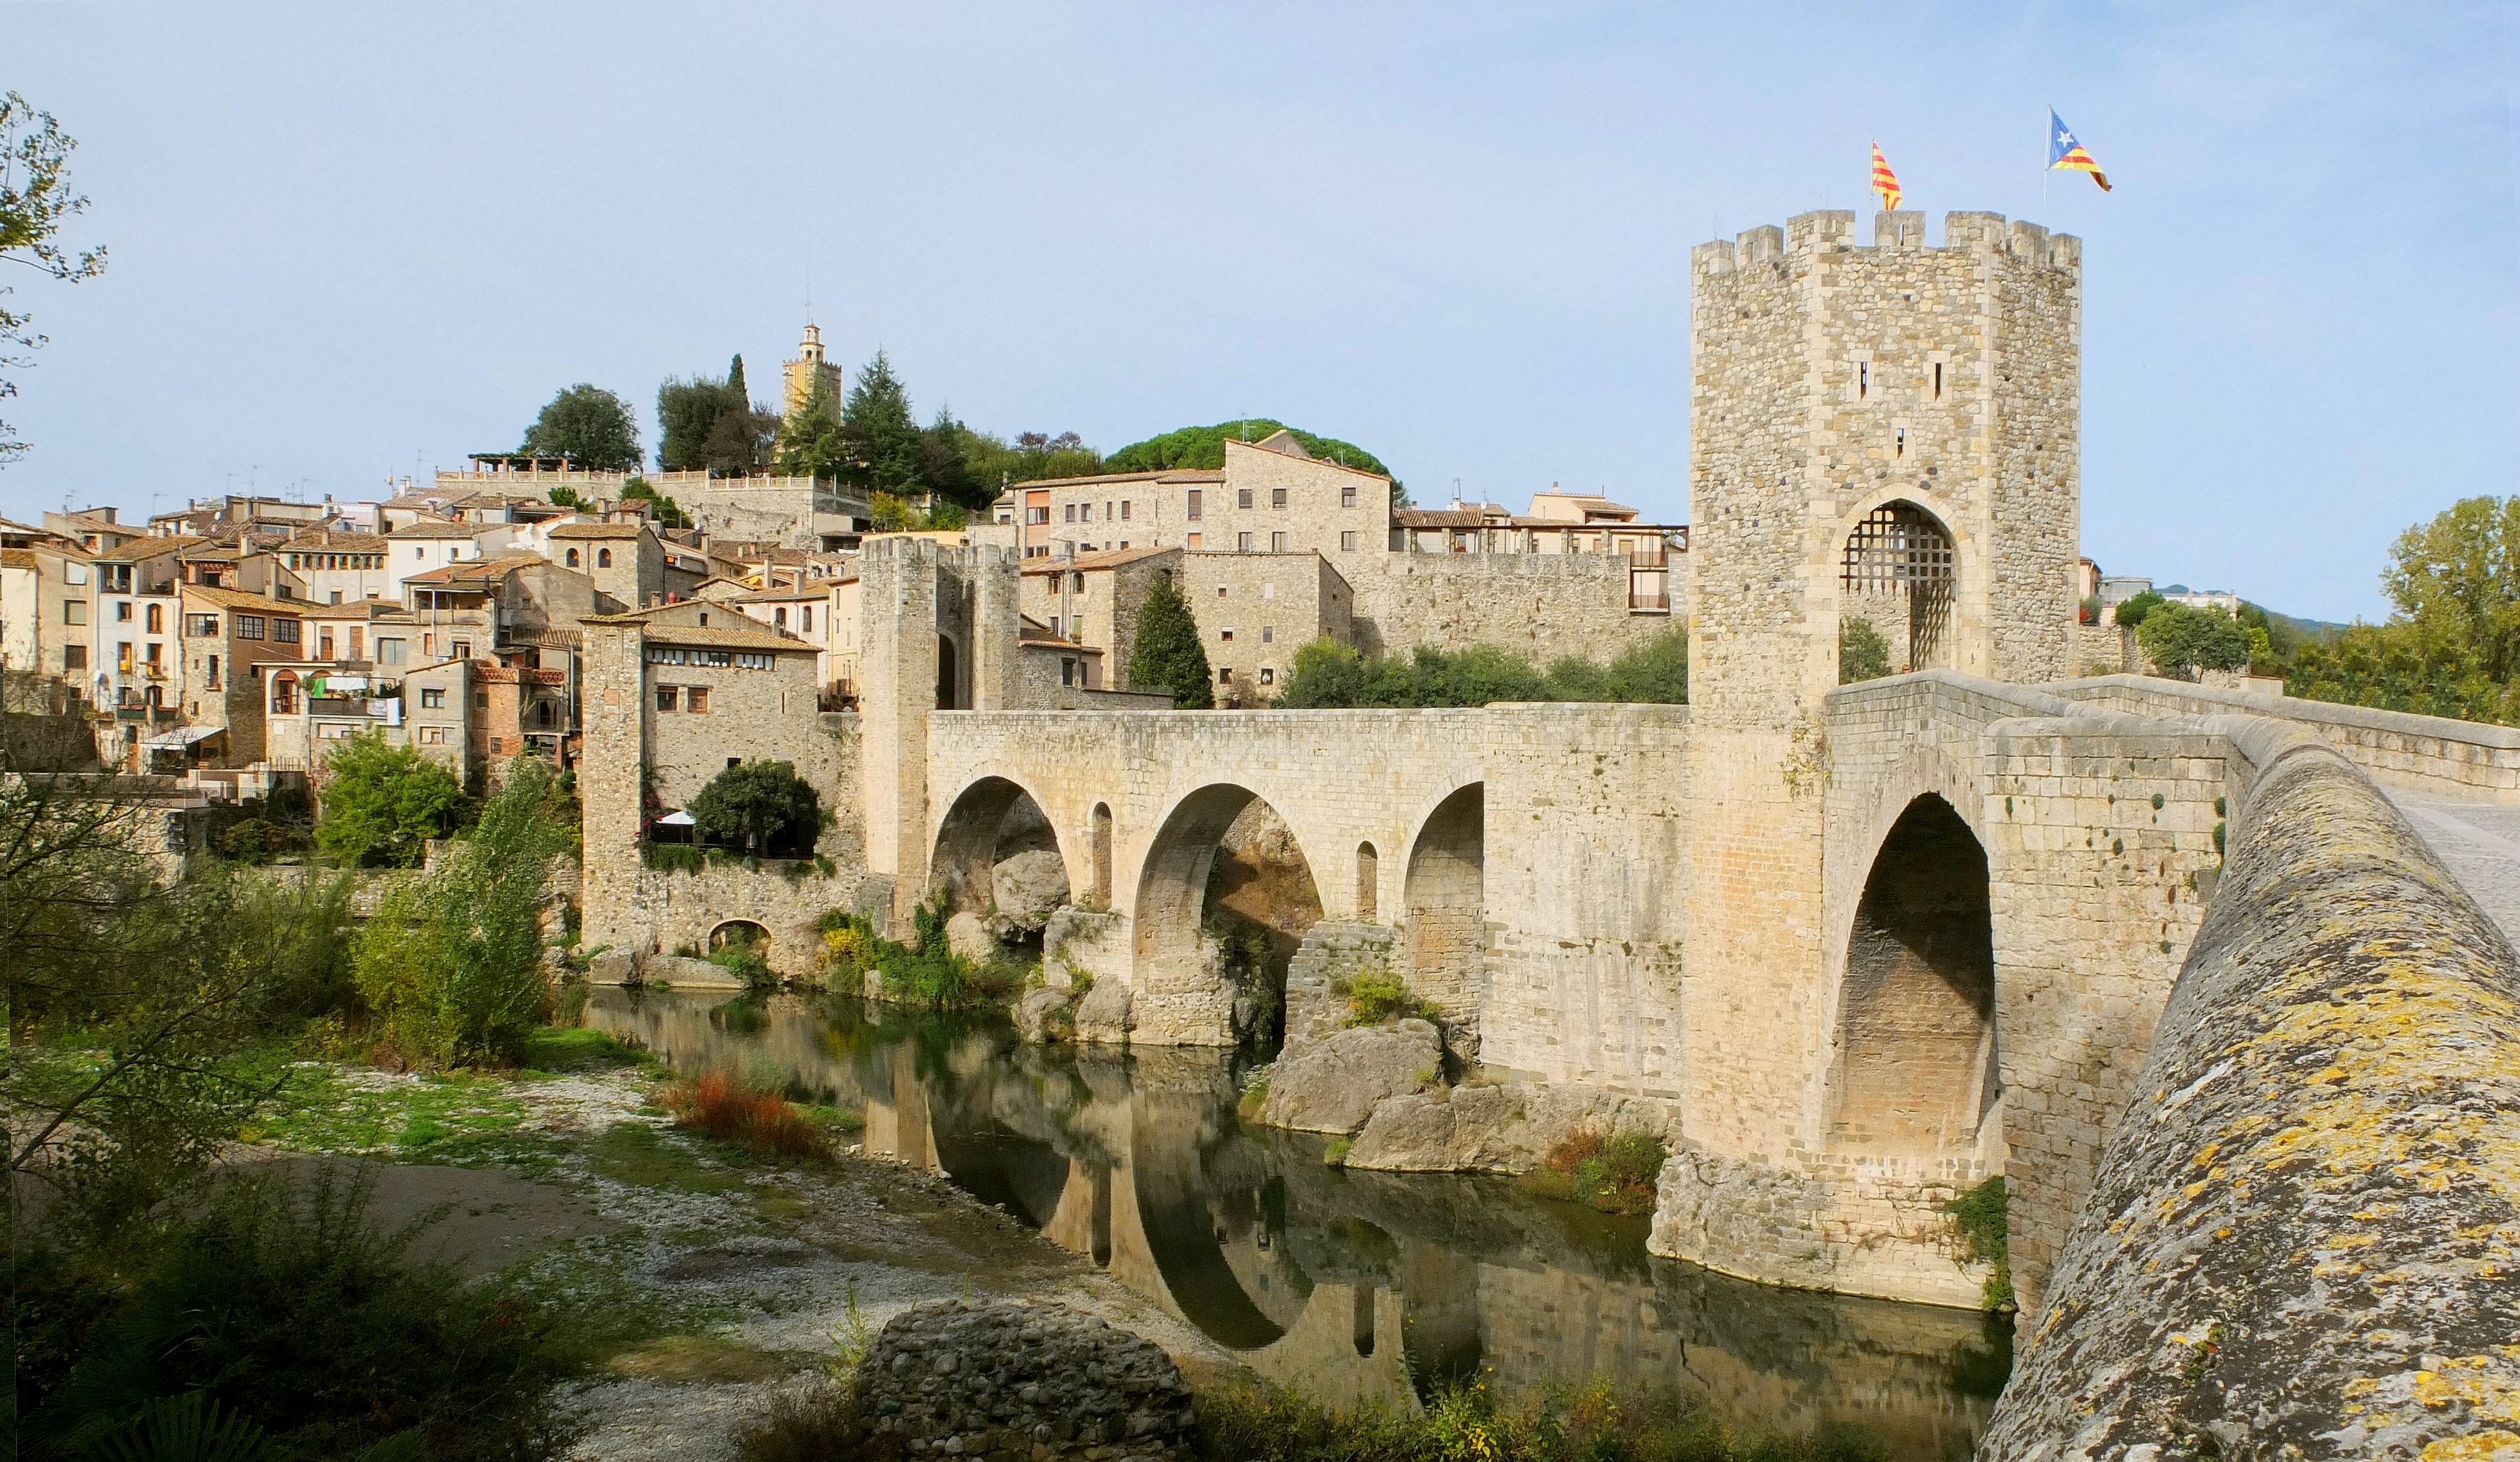 Besalu fortified bridge